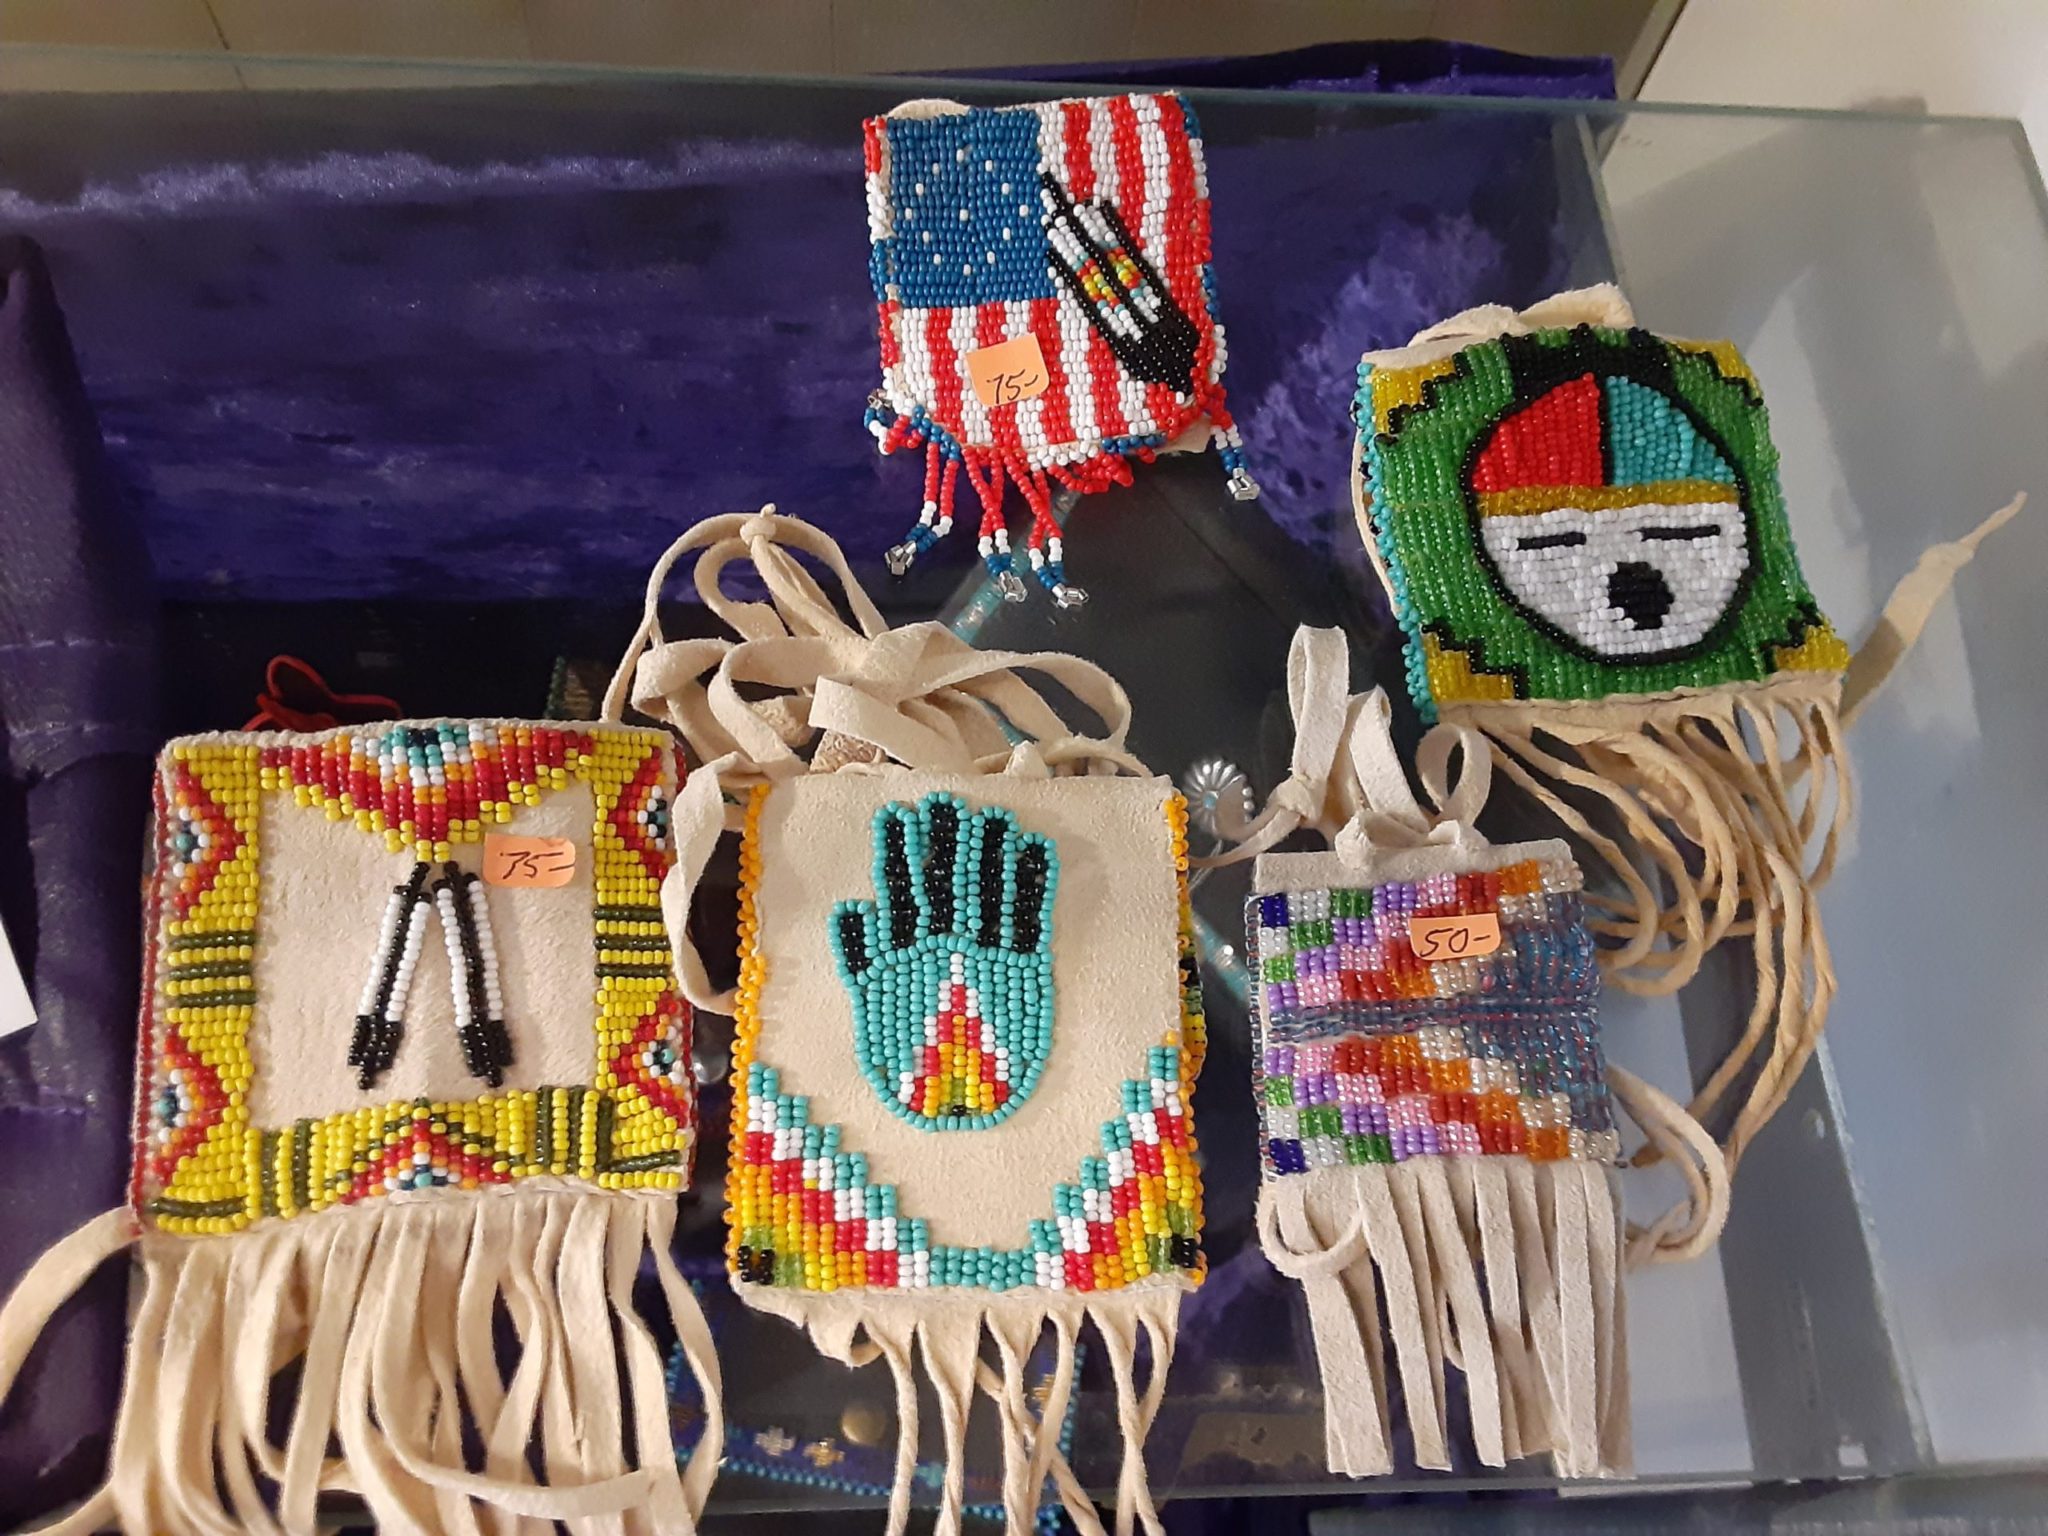 Taos Navajo Bohemian Crossbody Bag